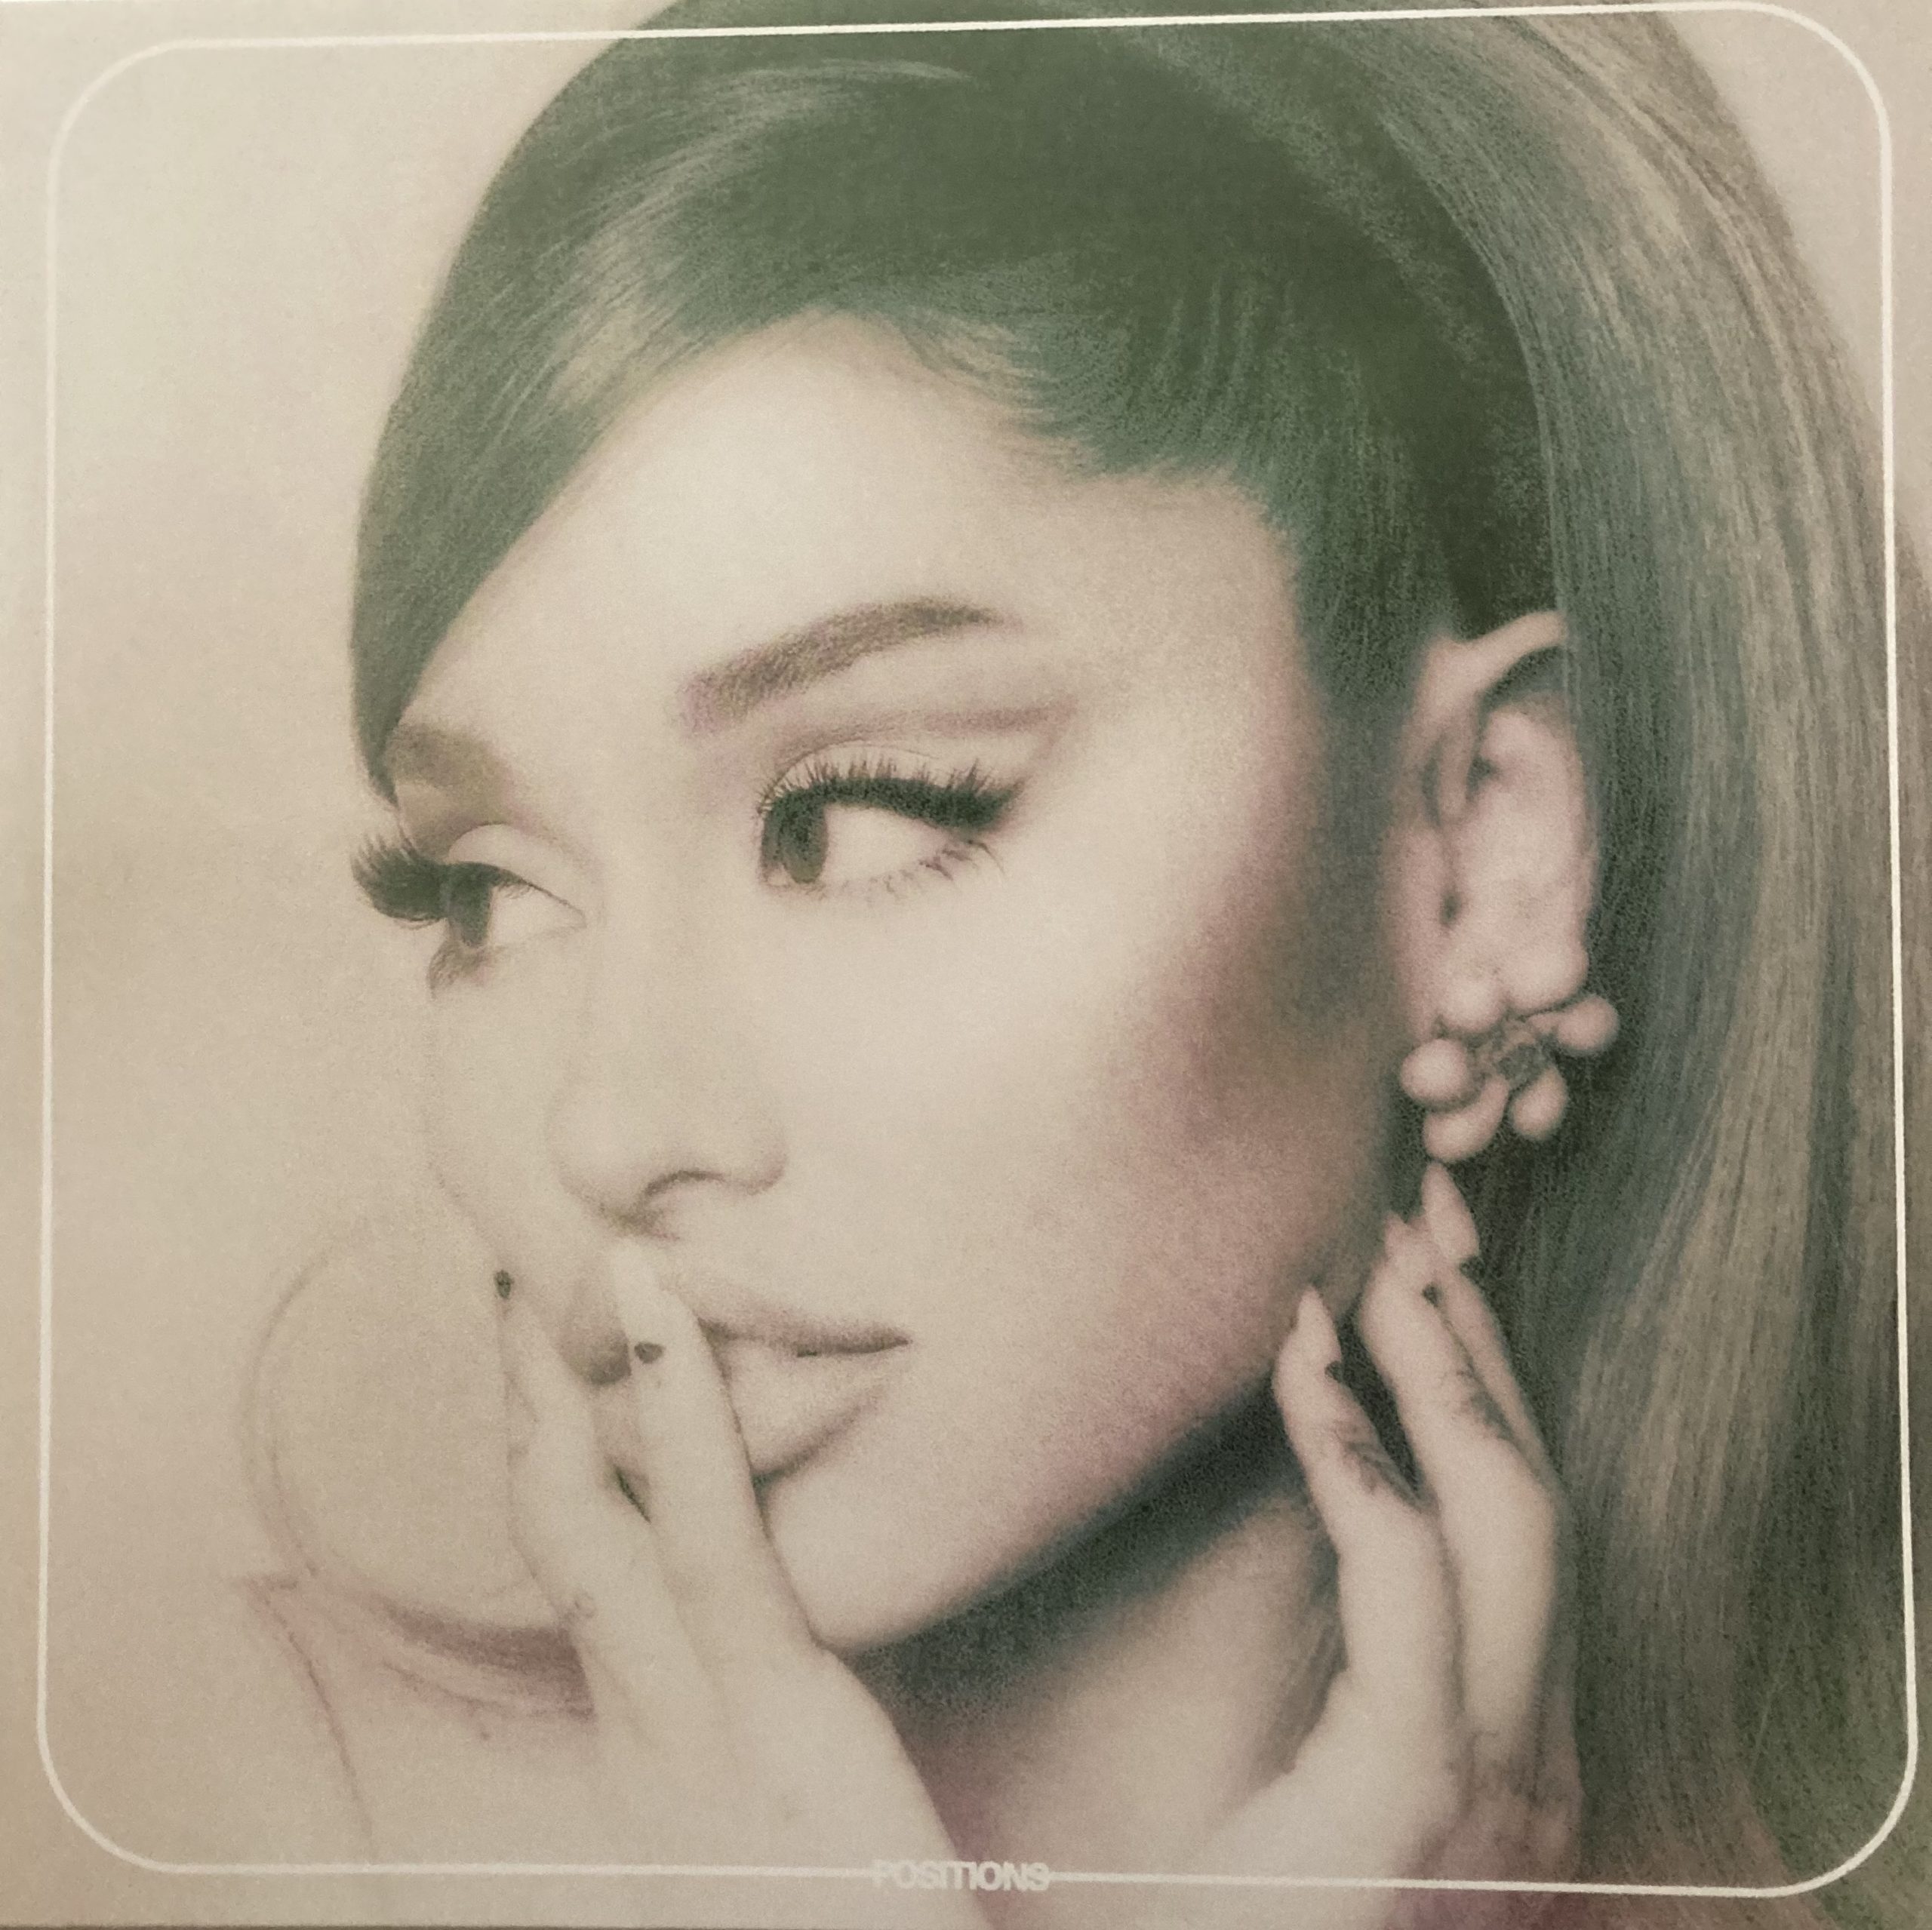 La corresponsal adolescente”Ariana Grande - Positions - 2020 - VinylRoute